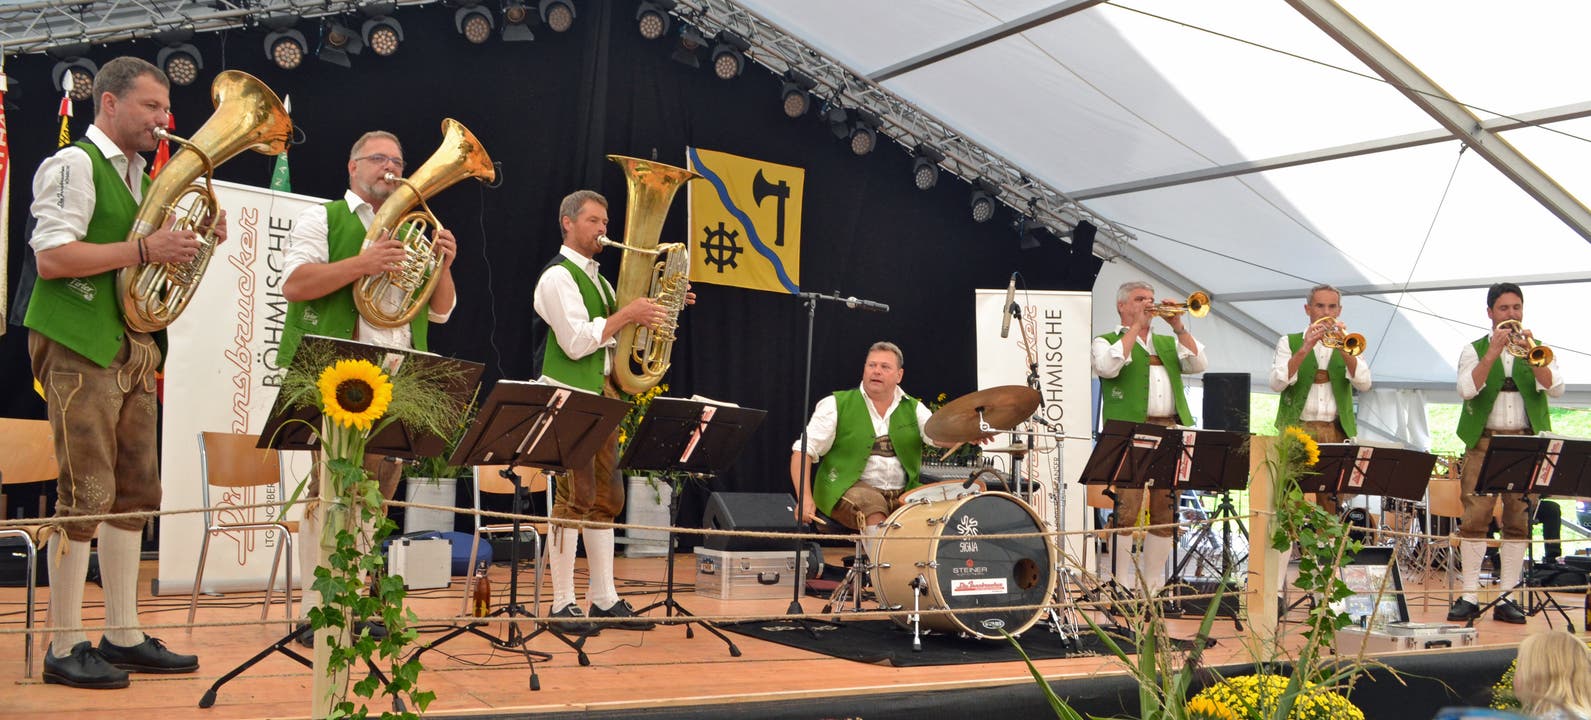 Die Innsbrucker Böhmischen begeisterten das Publikum am Sonntagnachmittag. (Bild: Peter Jenni)